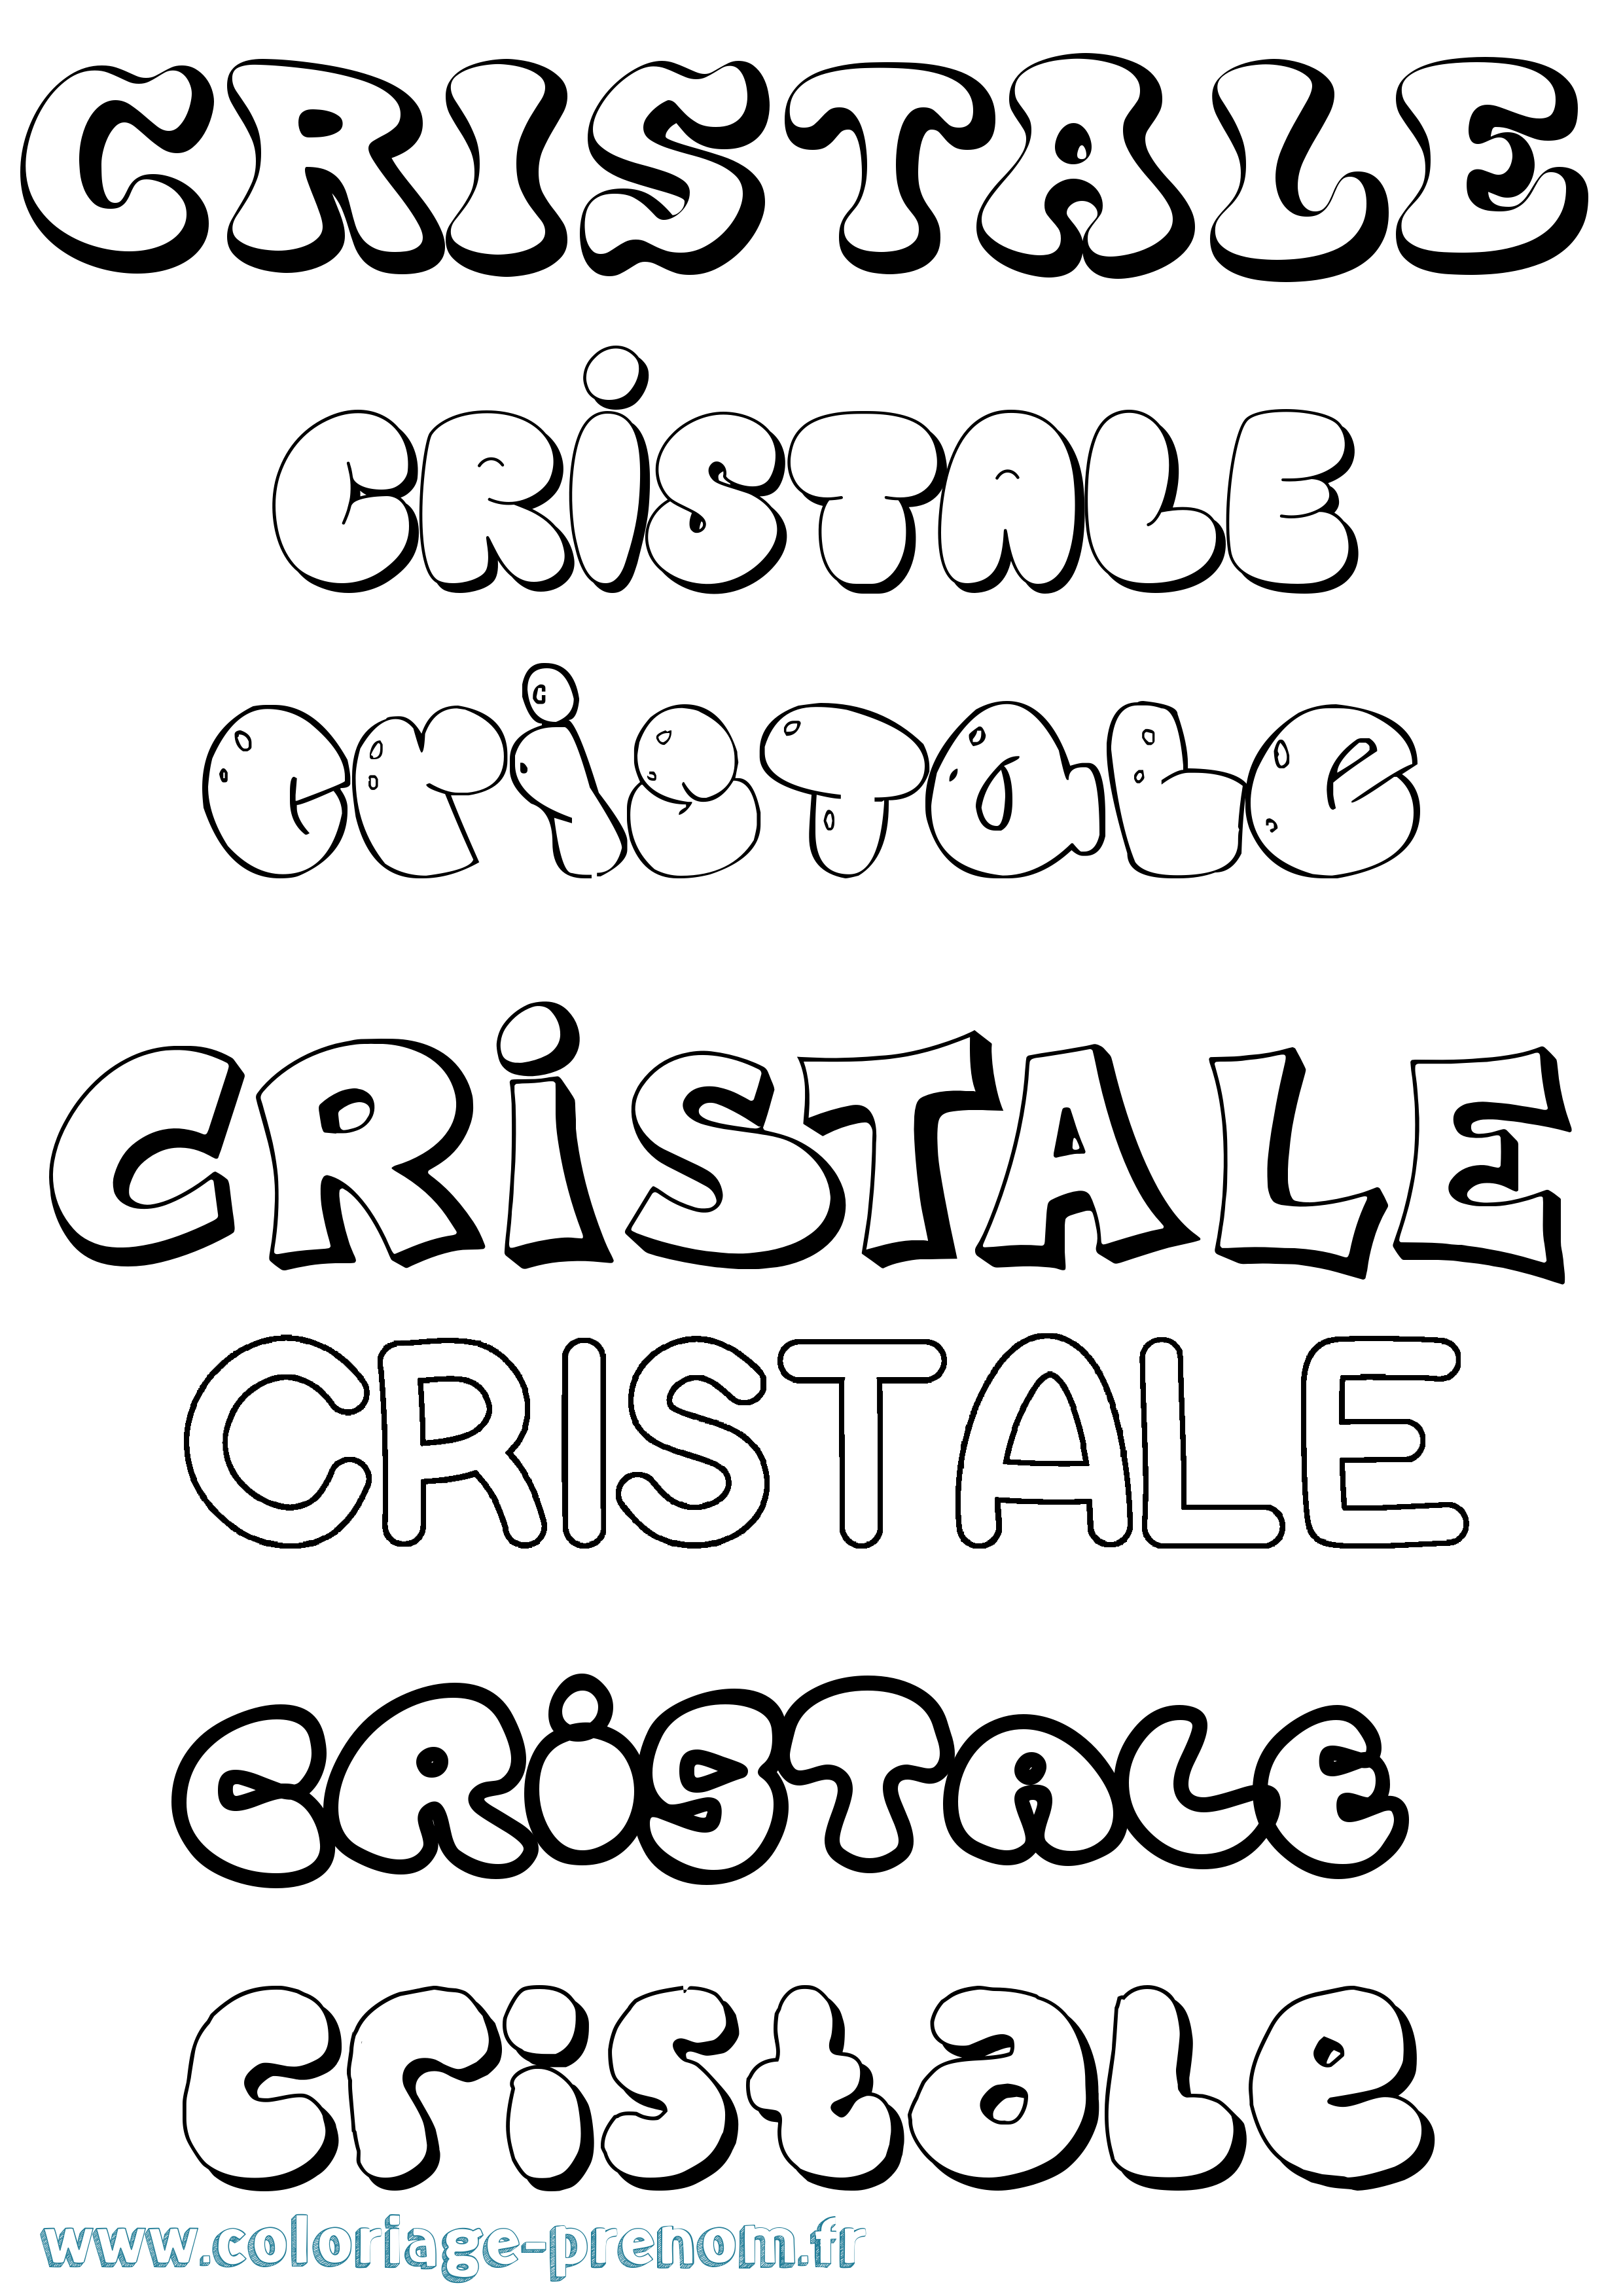 Coloriage prénom Cristale Bubble